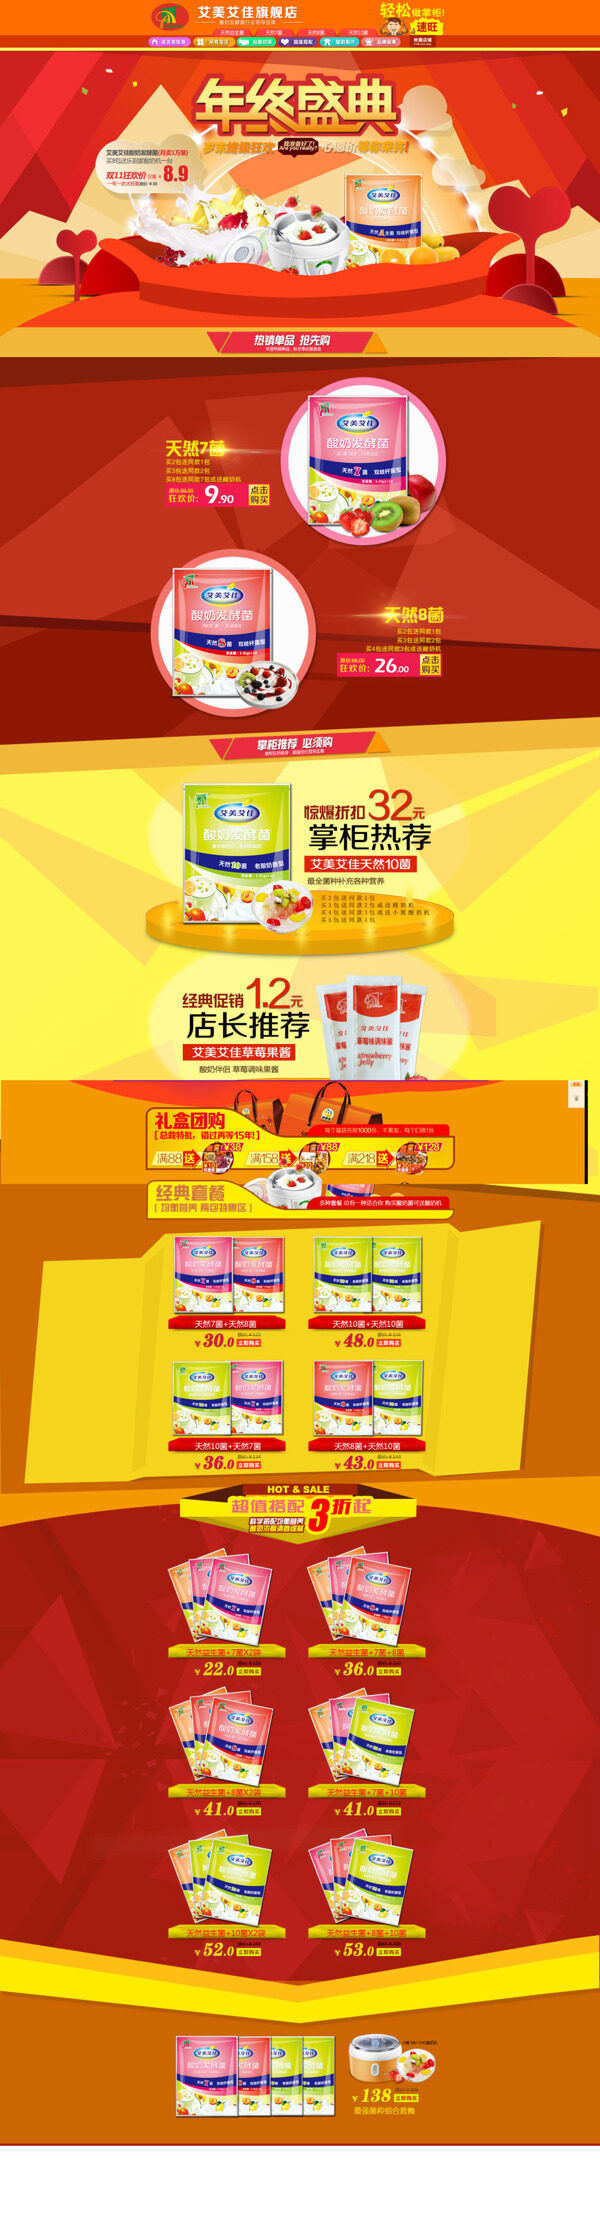 淘宝酸奶发酵促销活动海报